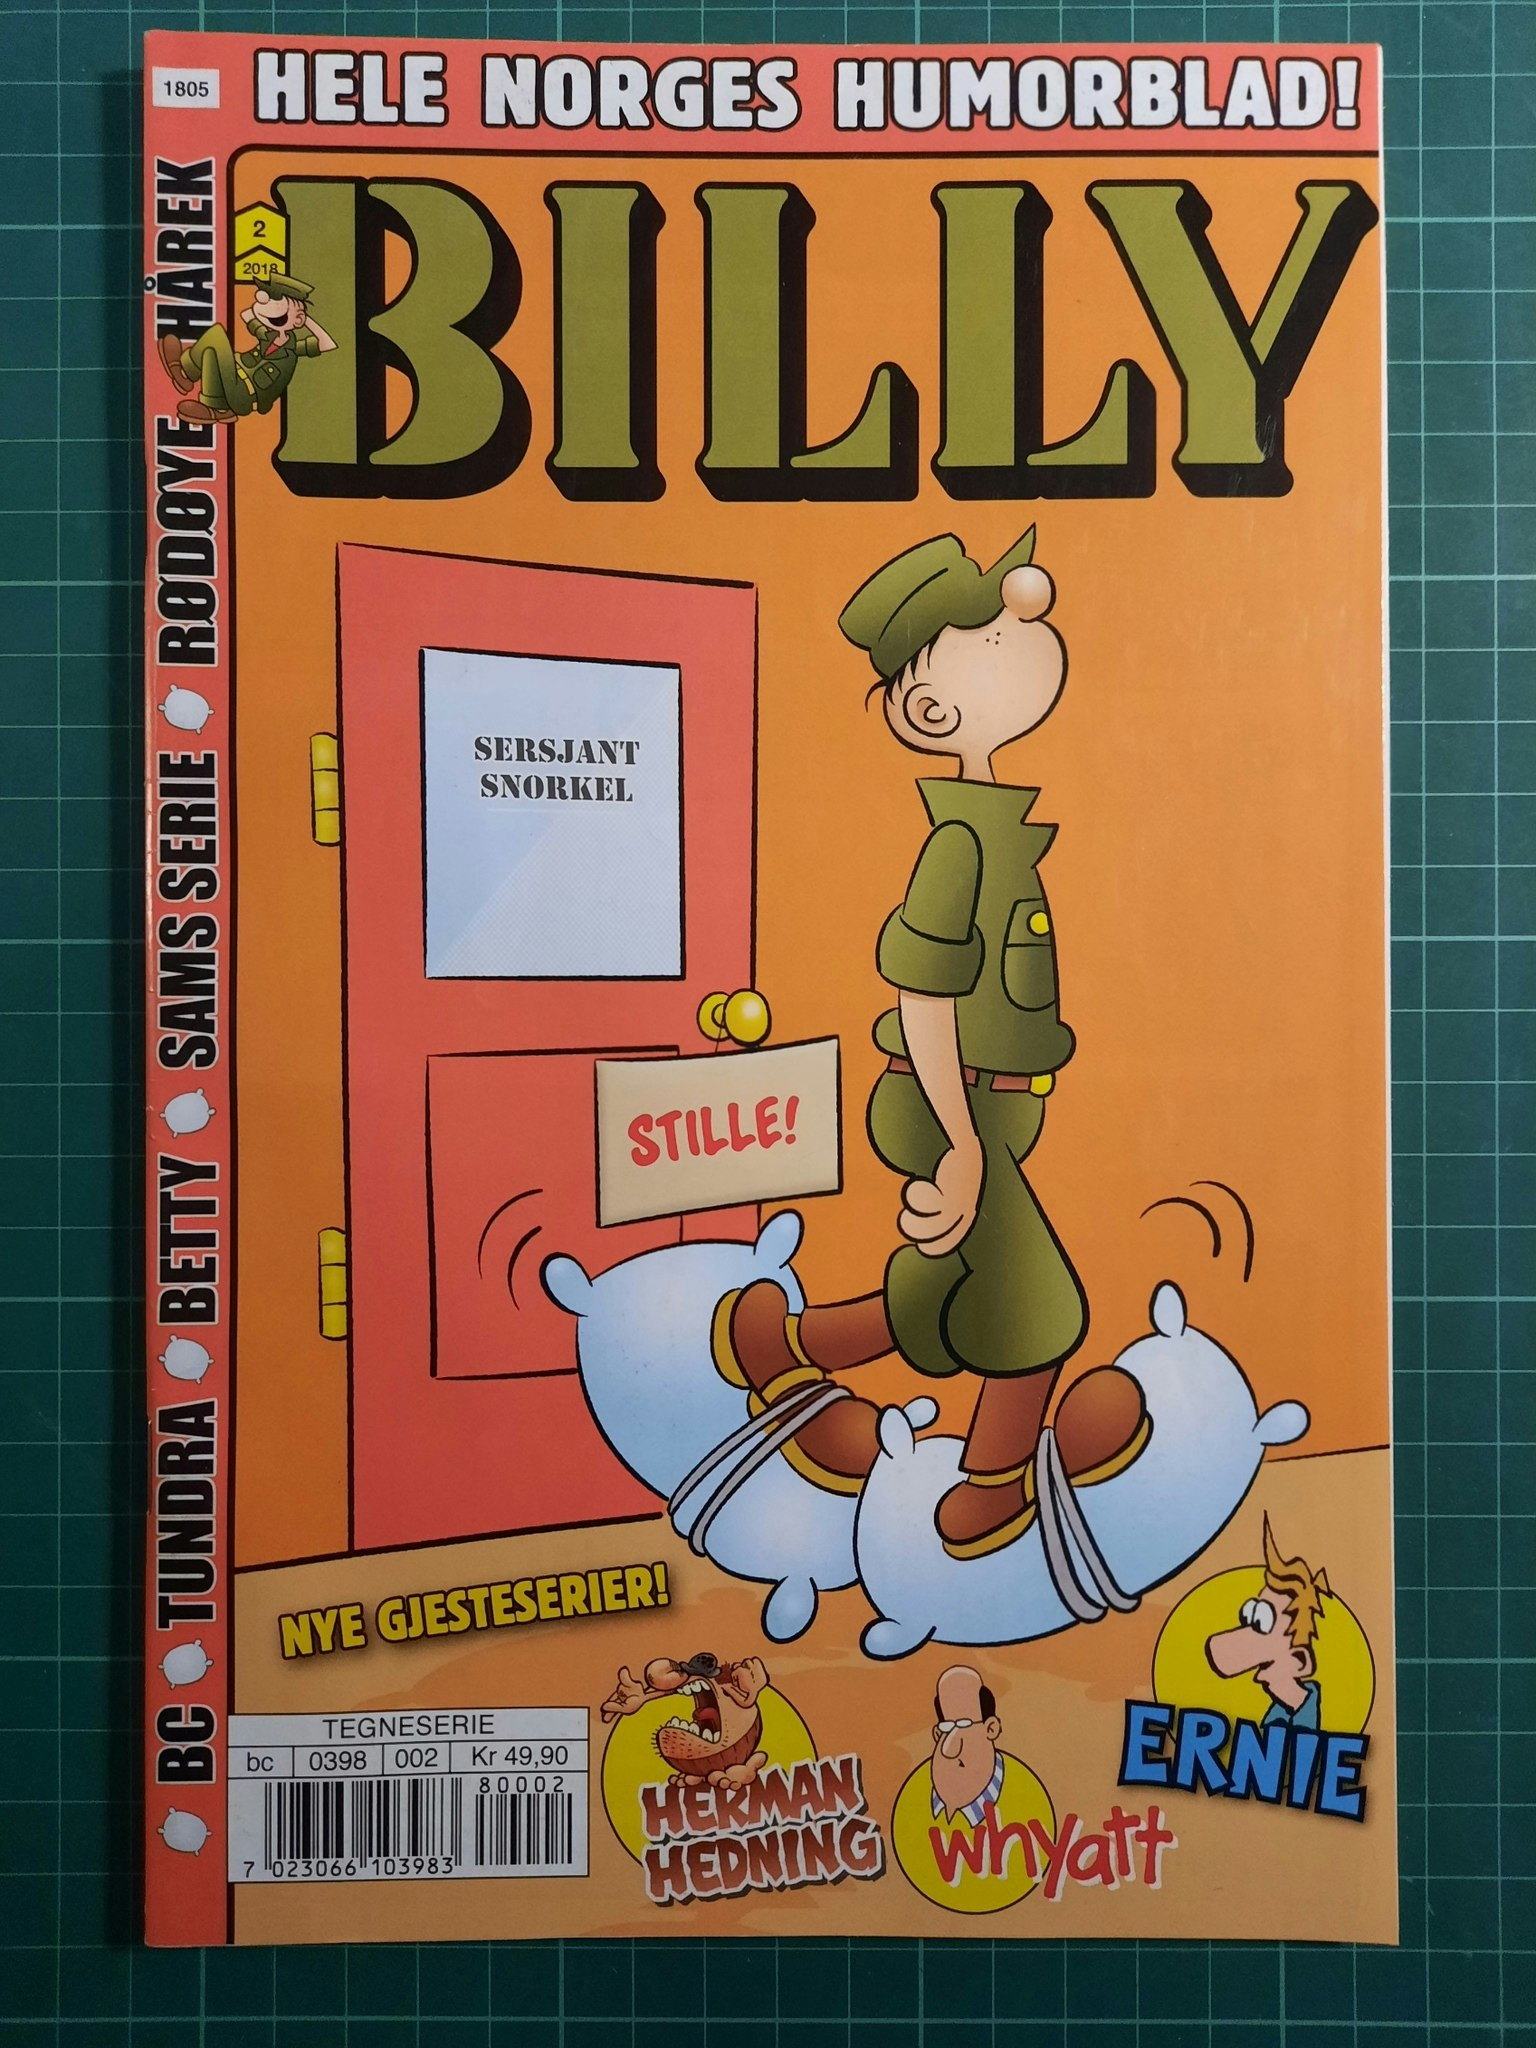 Billy 2018 - 02